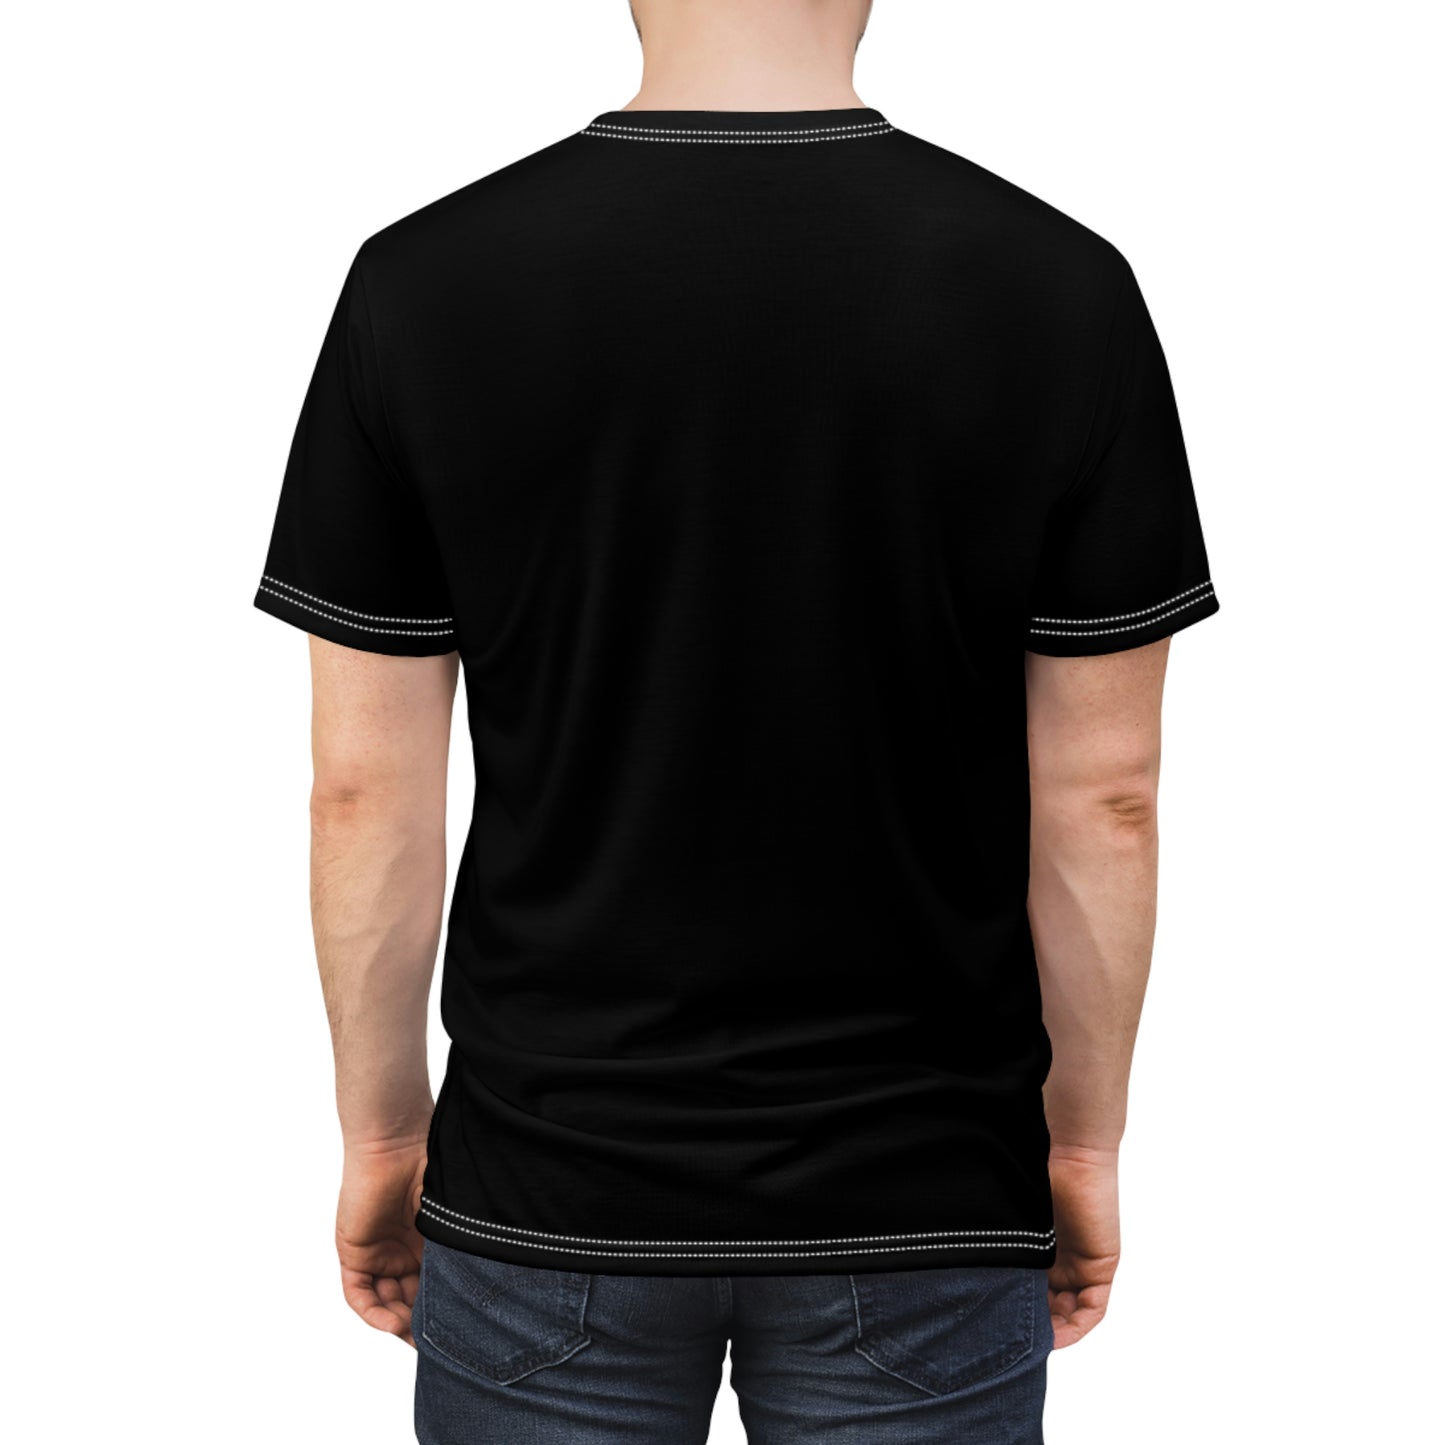 Road Kill - Unisex All-Over Print Cut & Sew T-Shirt